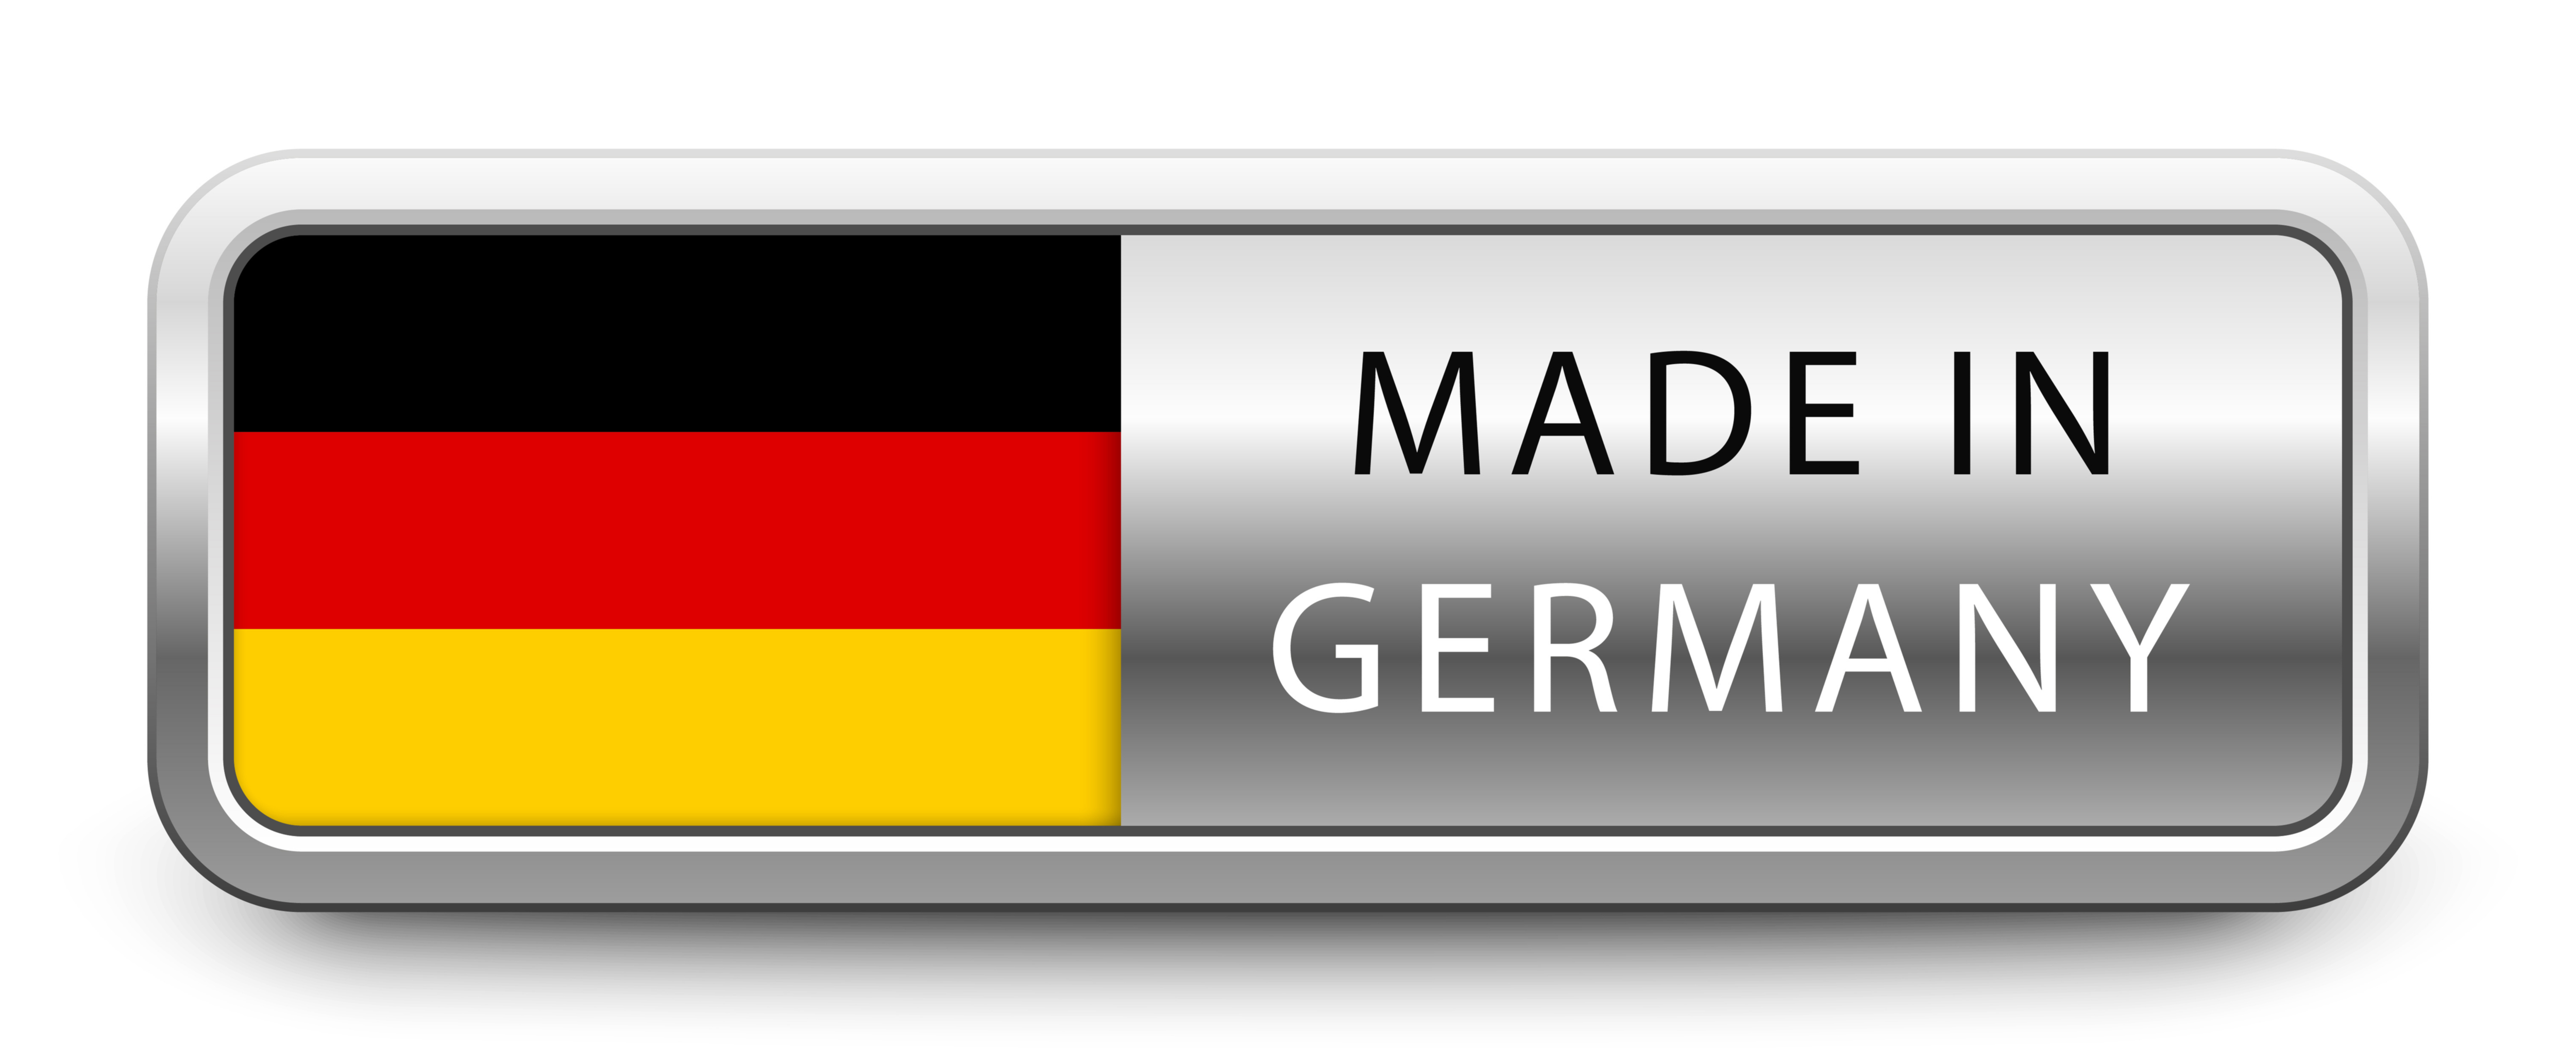 Germany, sheet metal, manufacturing